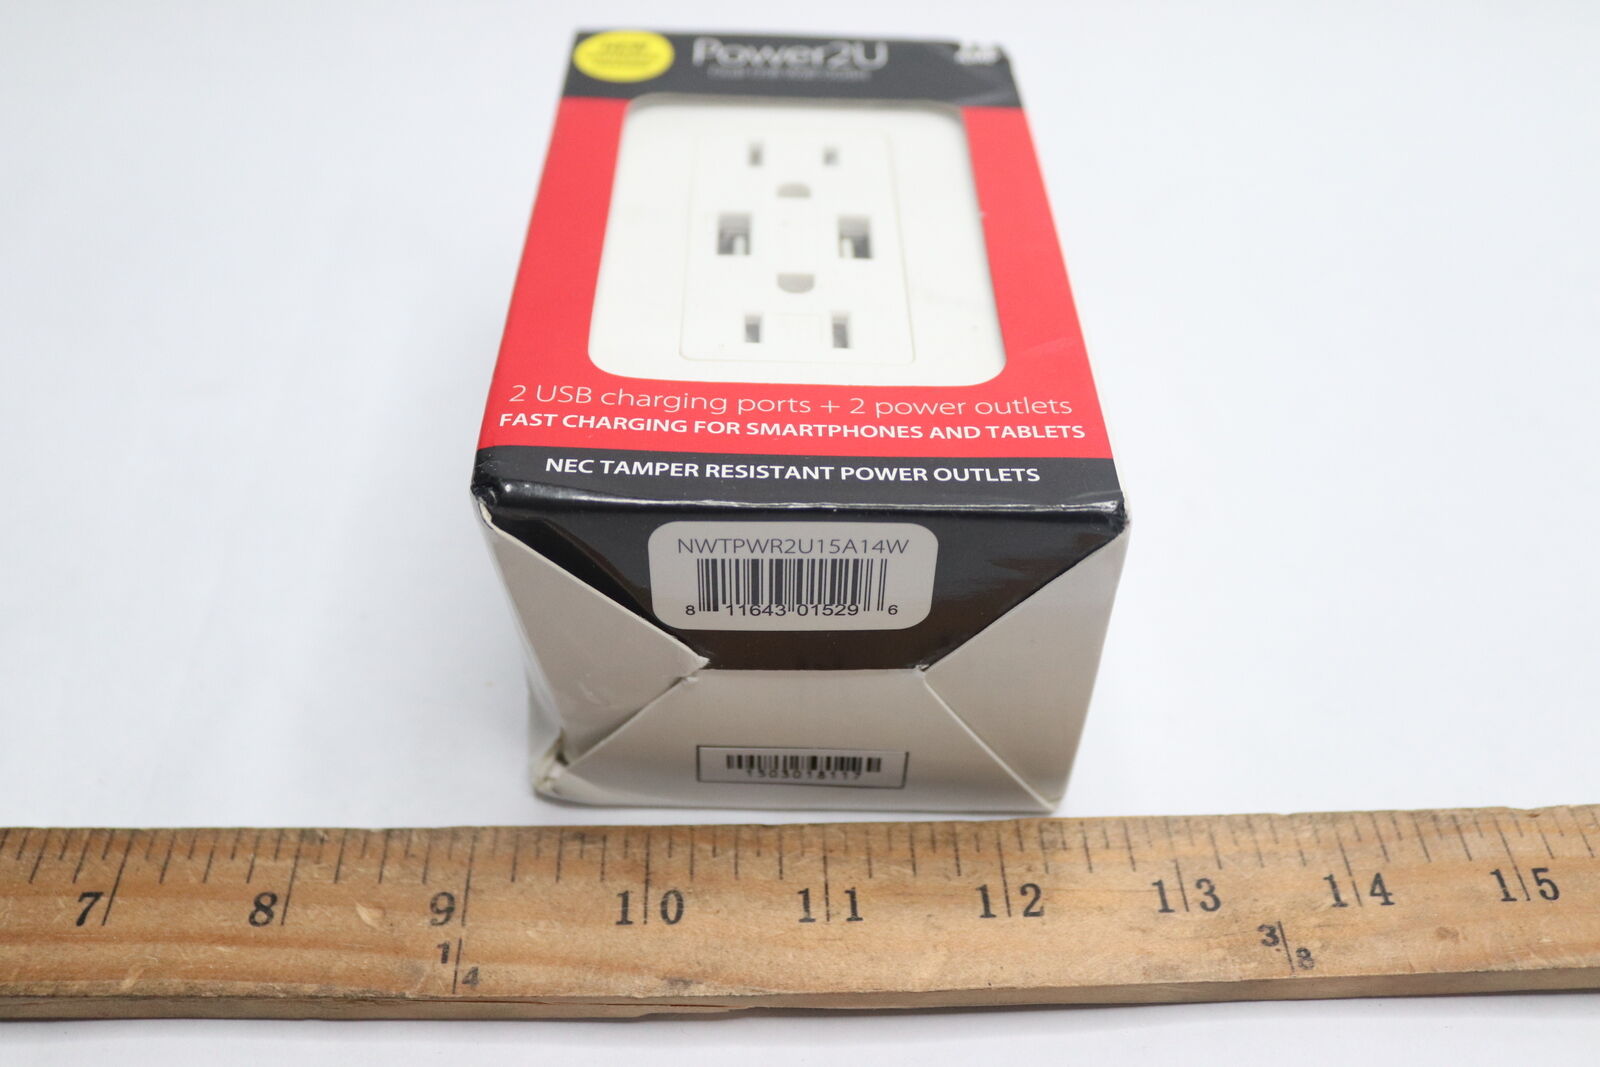 Power2U Electrical Outlet with 2x USB Ports 14 Cu in NWTPWR2U15A14W